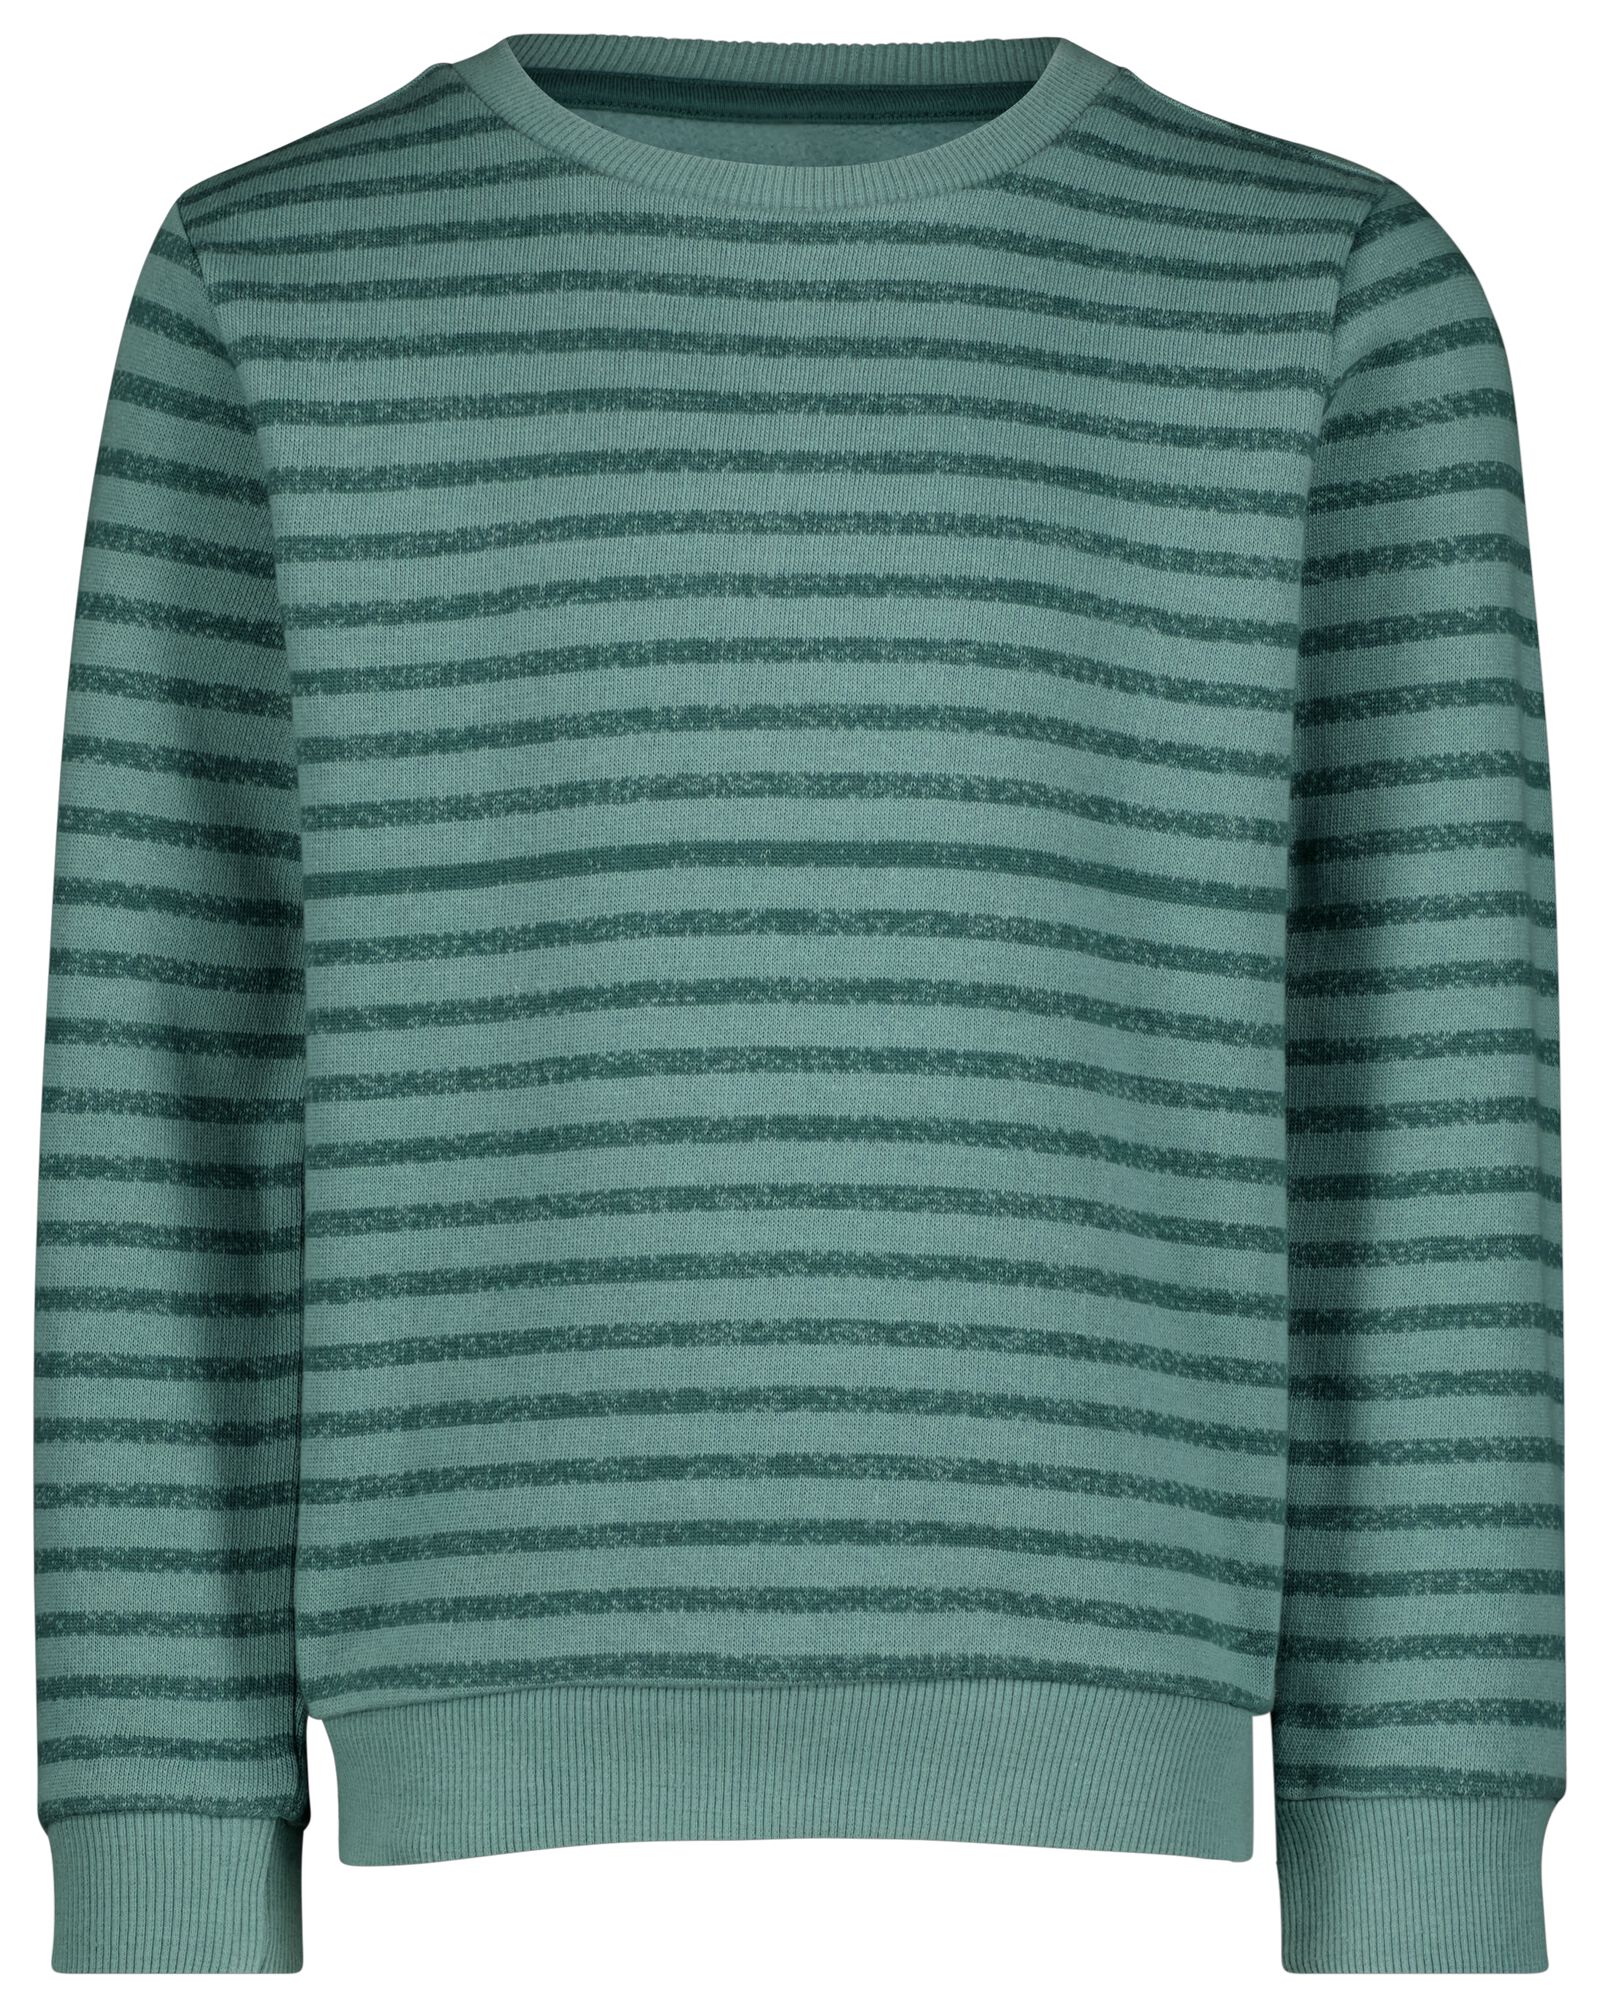 kinder sweater met strepen groen - 1000029221 - HEMA